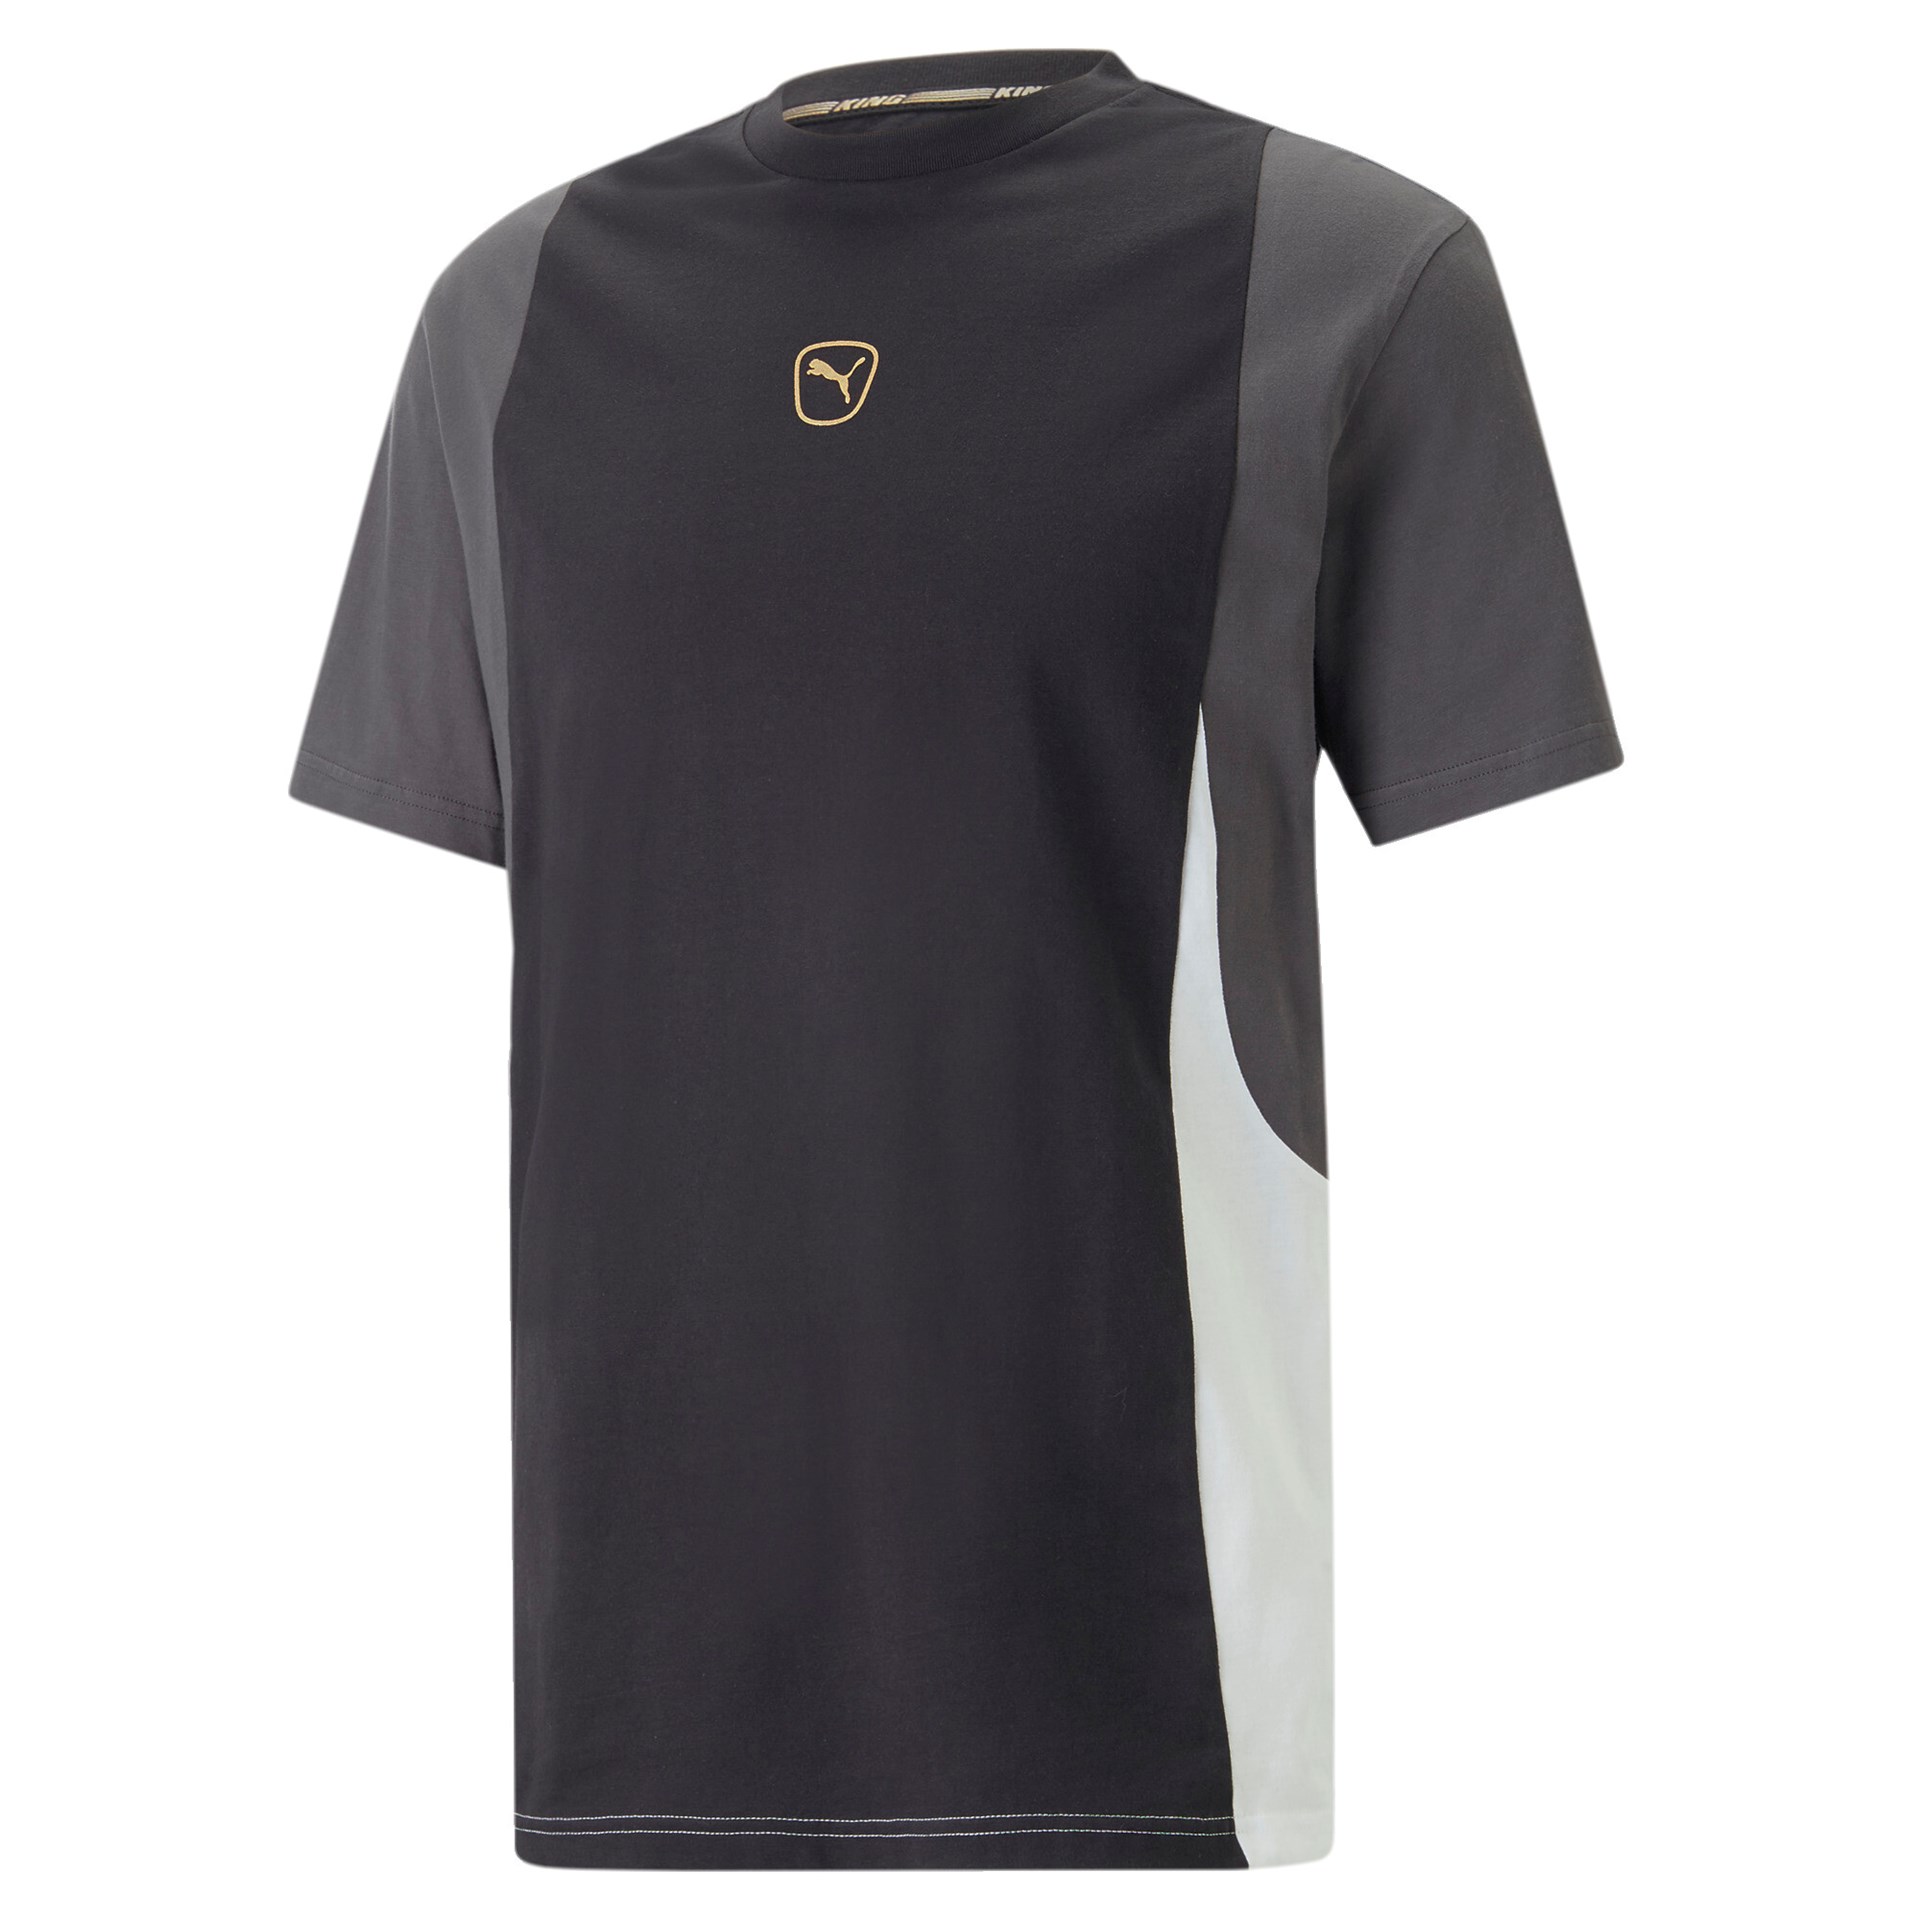 Puma King Top Fussball T- Shirt puma black-shadow gray-puma white M